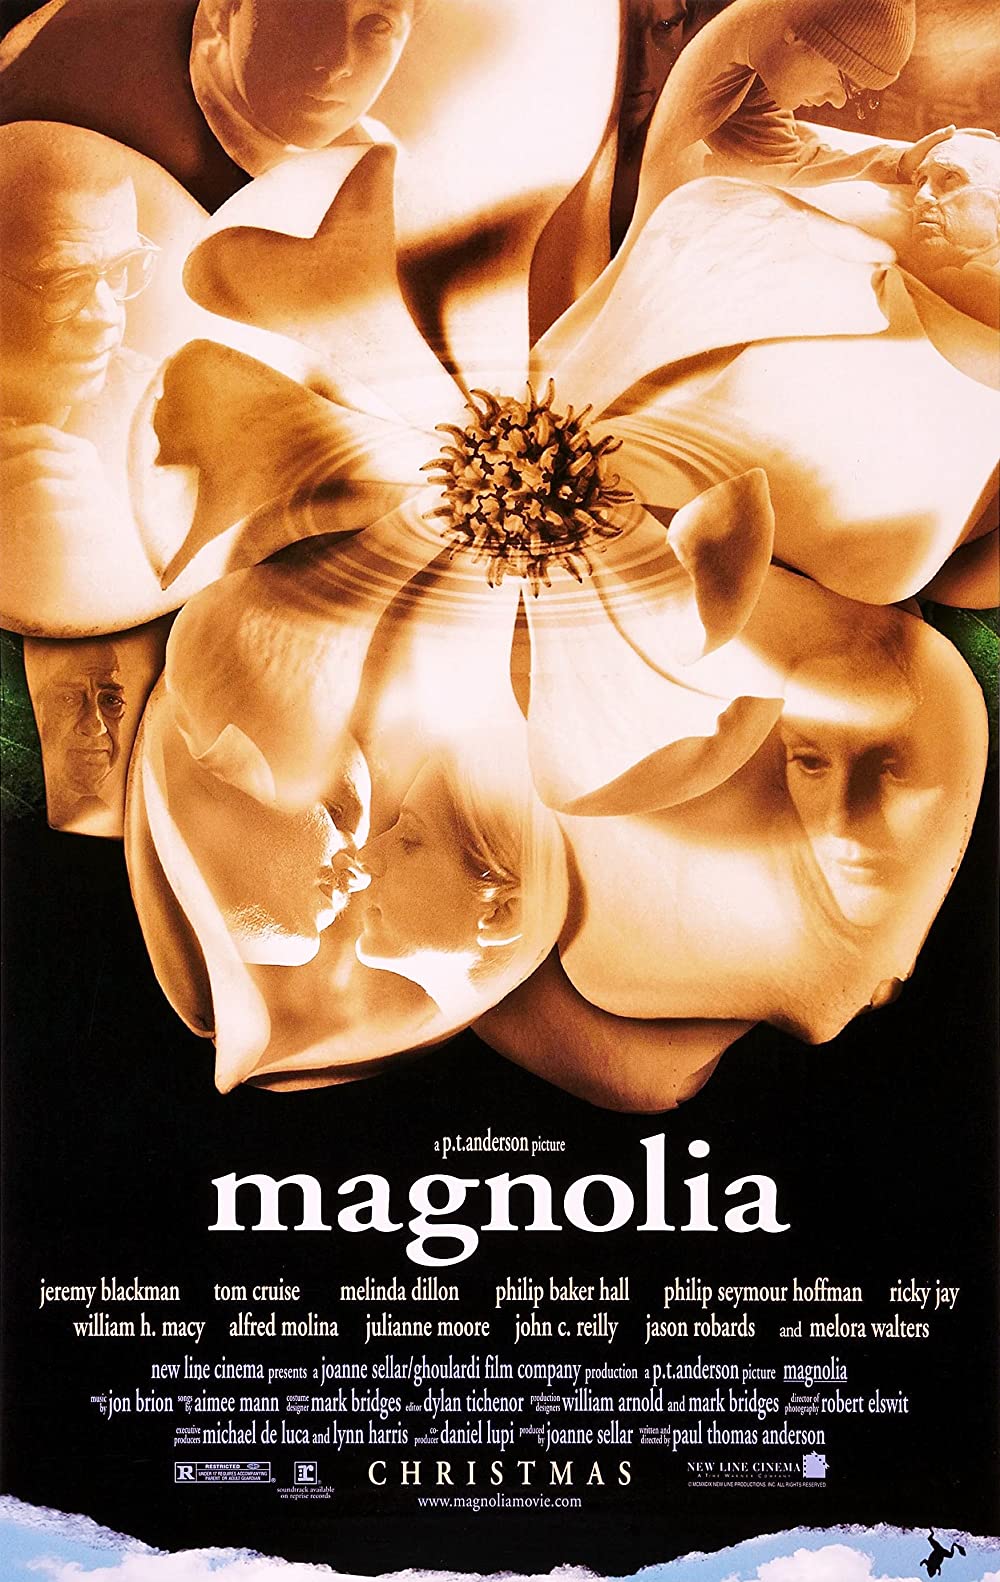 Filmbeschreibung zu Magnolia (OV)